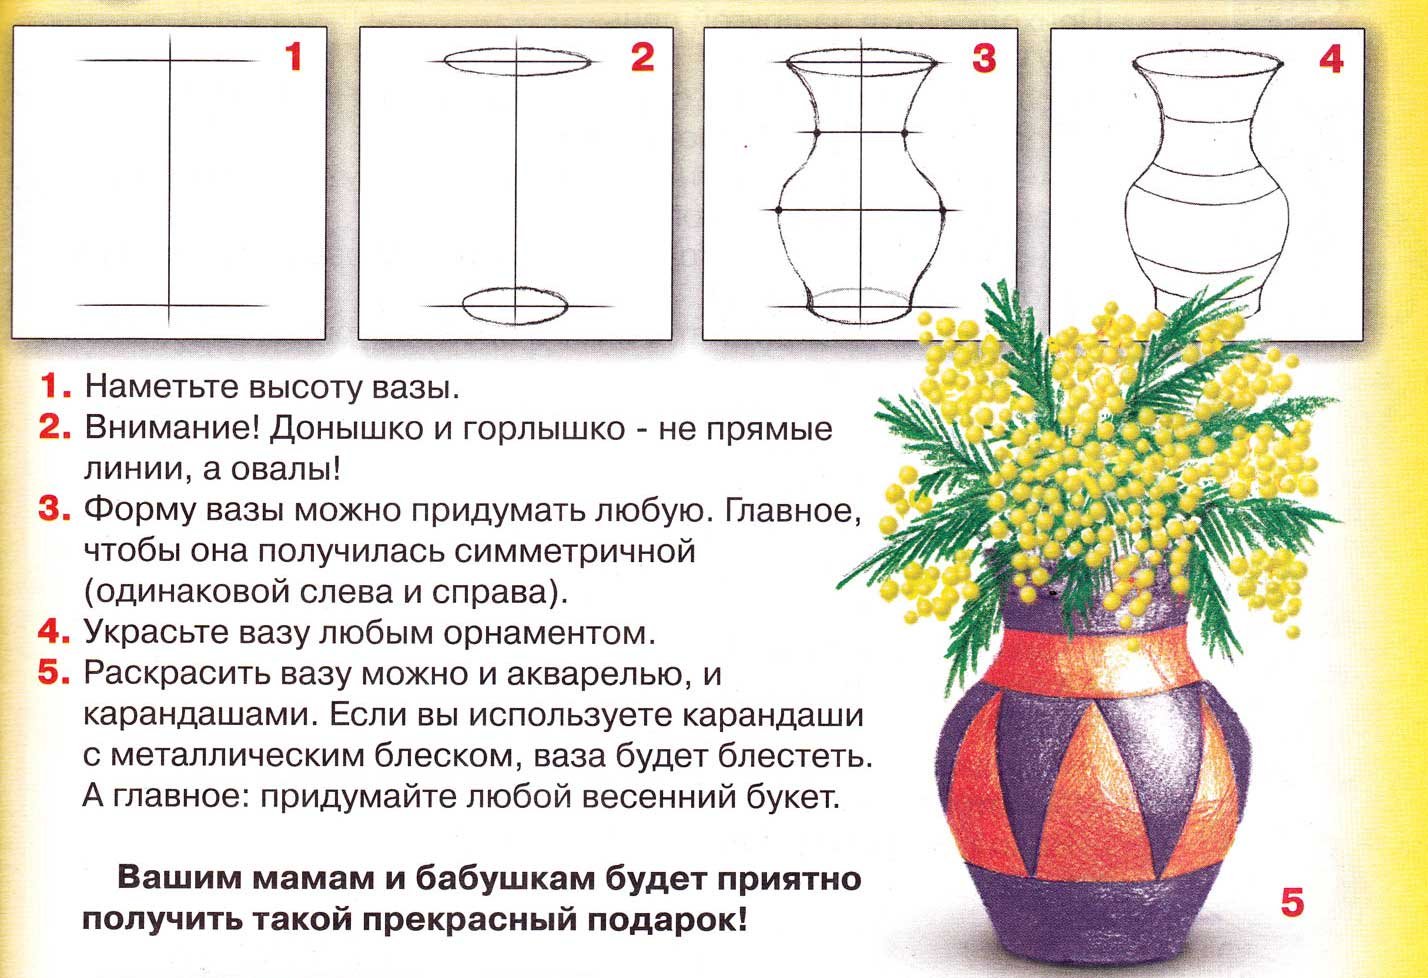 Этапы рисования вазы для детей